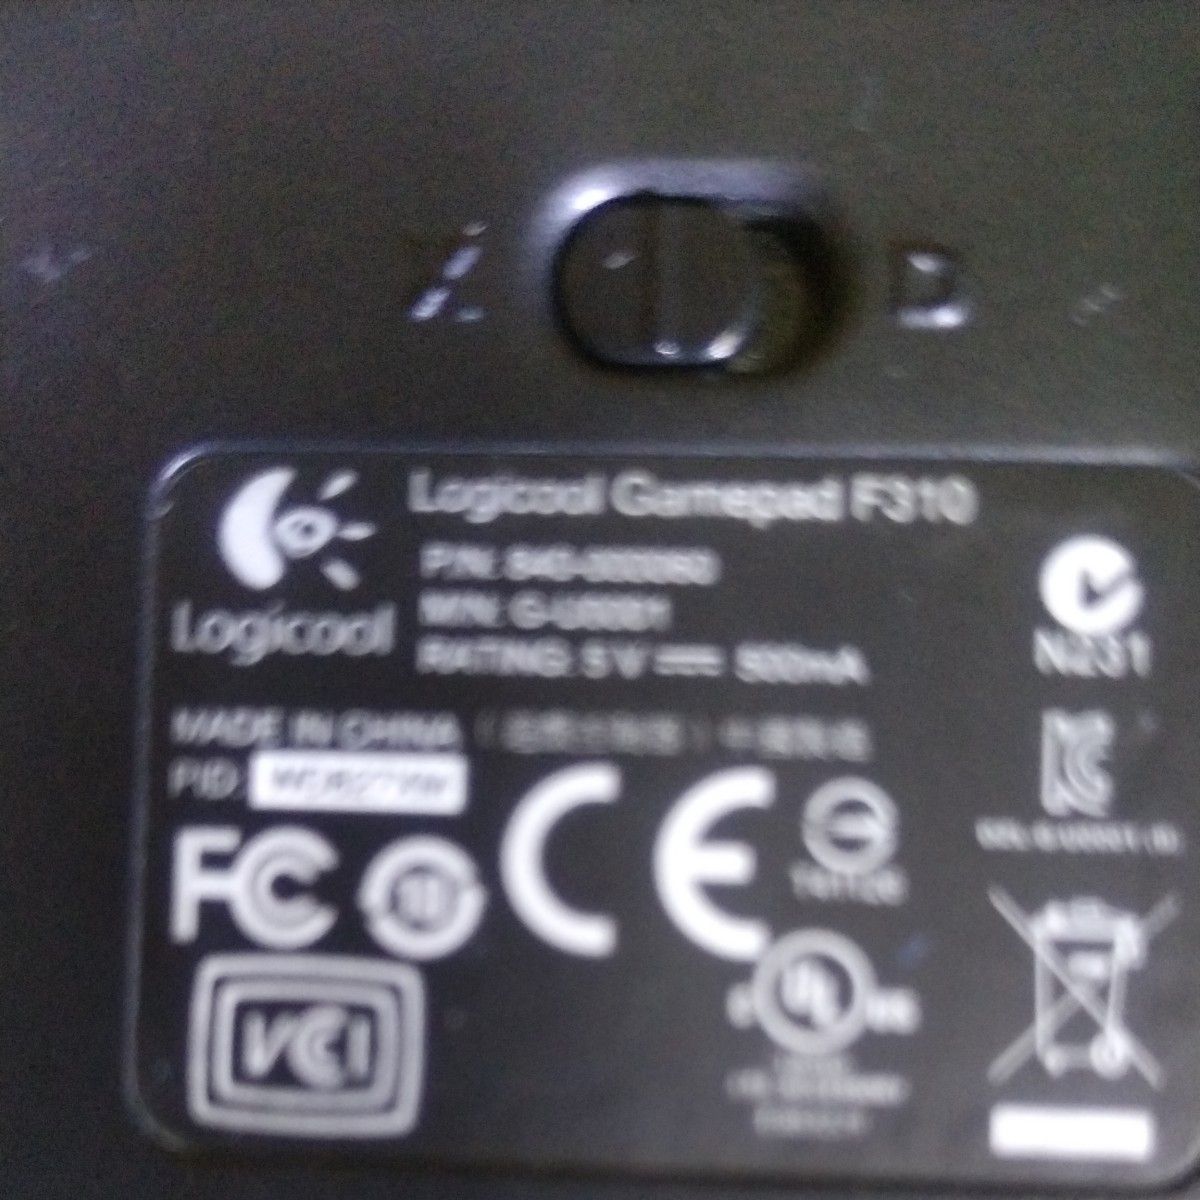 ★Logicool ゲームパッド コントローラー F310 PC ゲーム USB【 ファイナルファンタジーXIV 推奨周辺機器 】